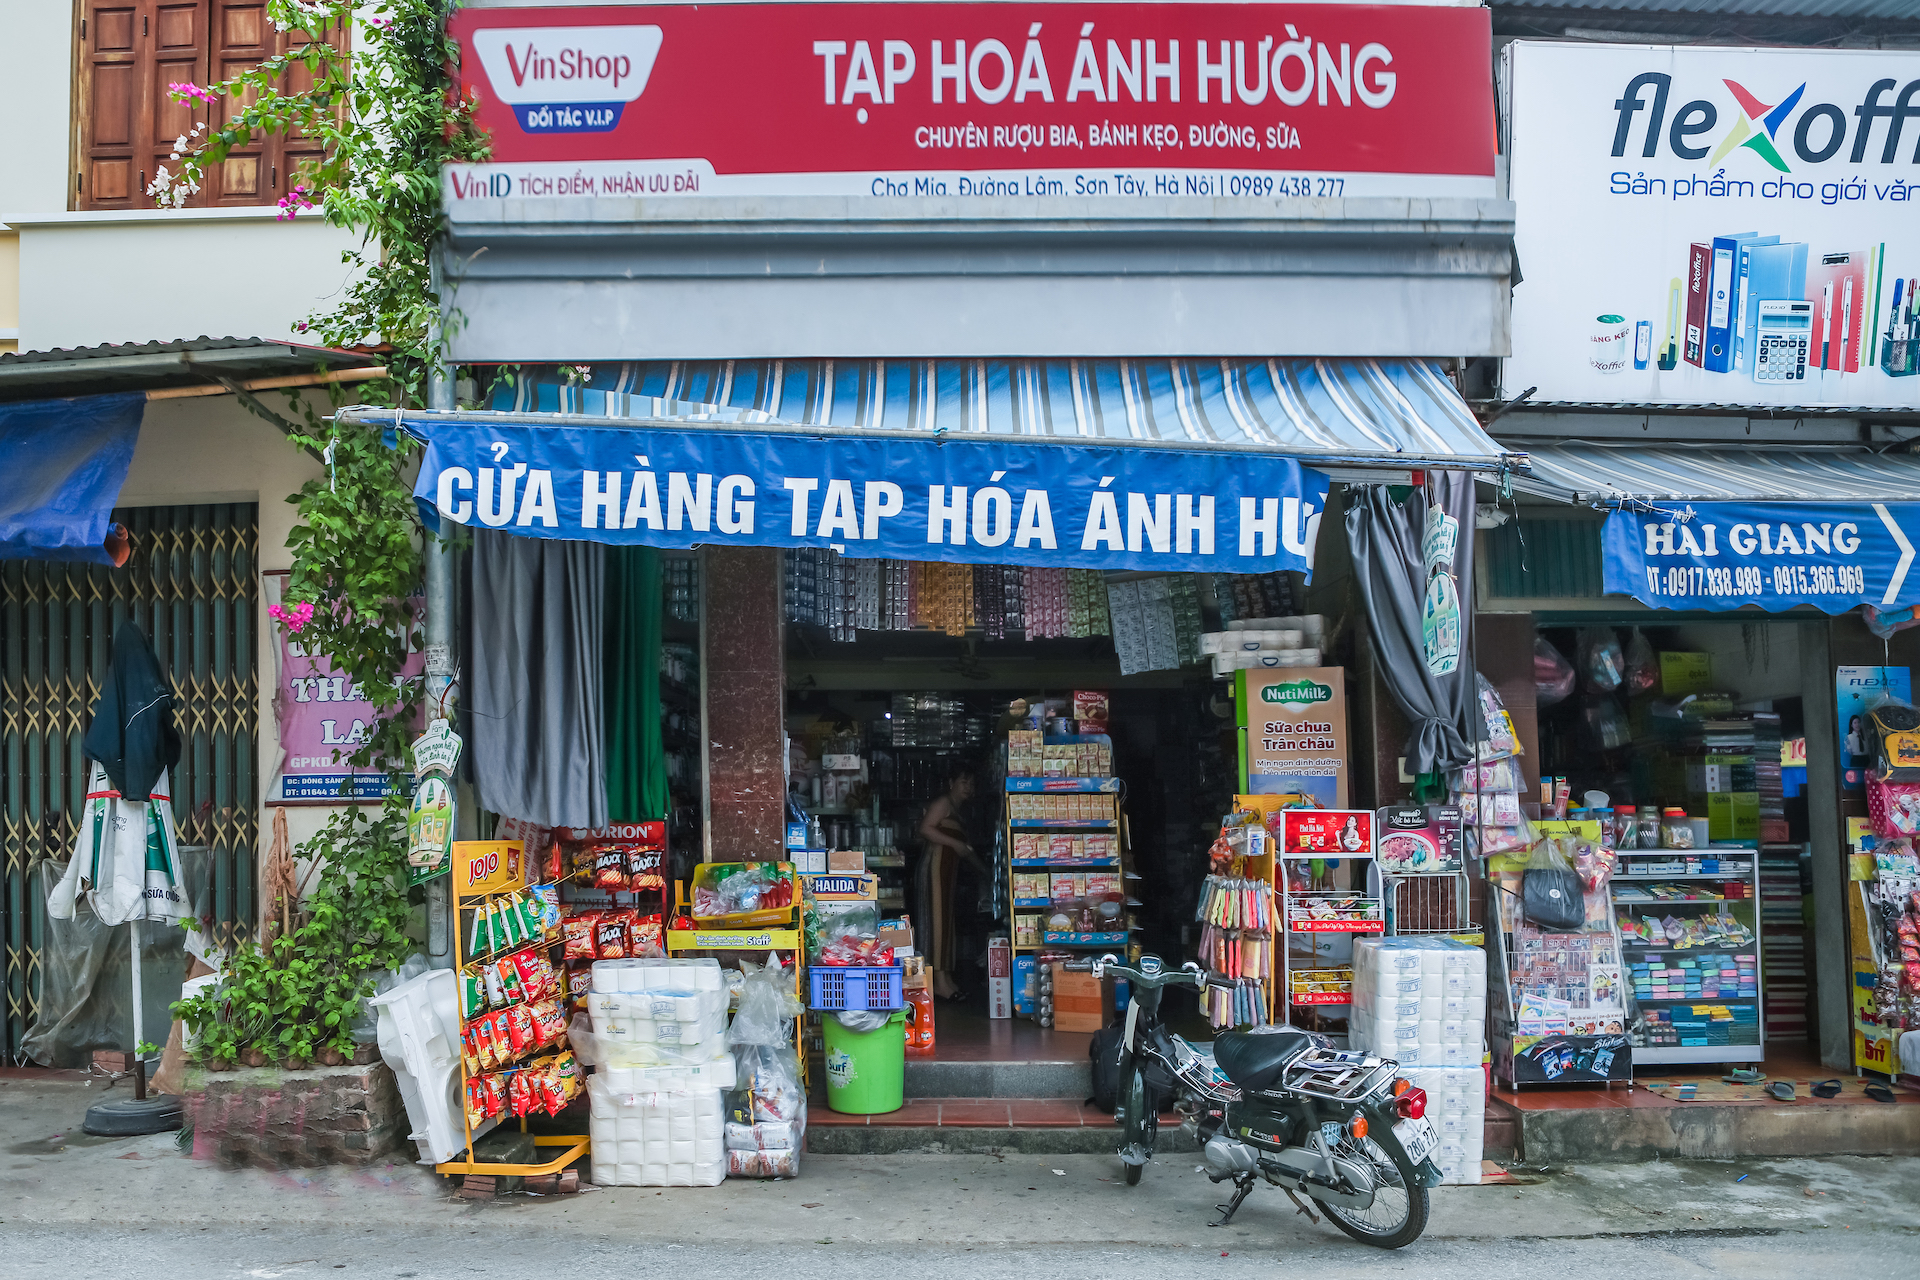 VinShop “mở khoá” cho quá trình chuyển đổi số bán lẻ truyền thống Việt Nam - Ảnh 1.